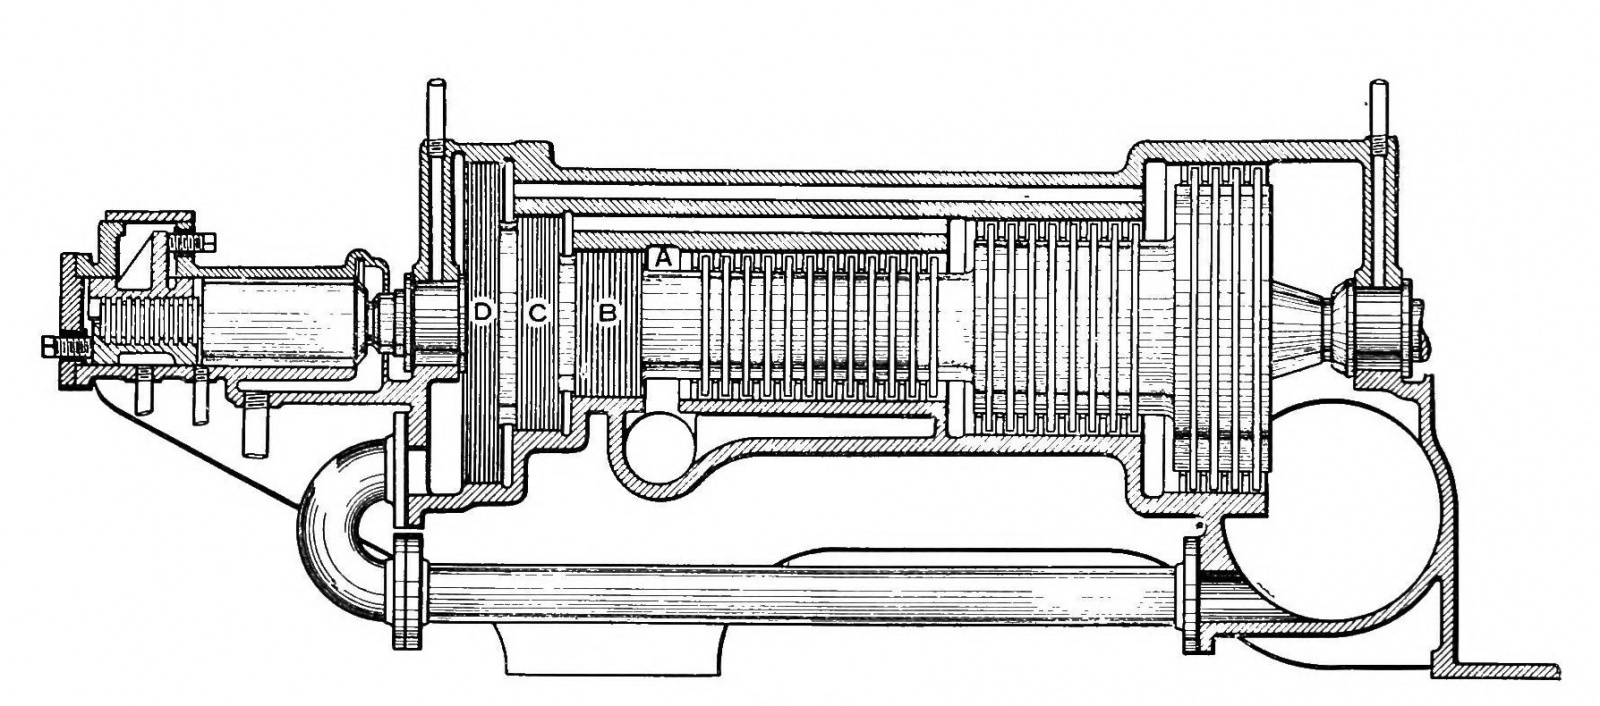 Вид в разрезе полностью разработанной турбины типа Parsons. Пар поступает слева (A) и проходит через роторы справа. Из книги Ripper, Heat Engines, 241.